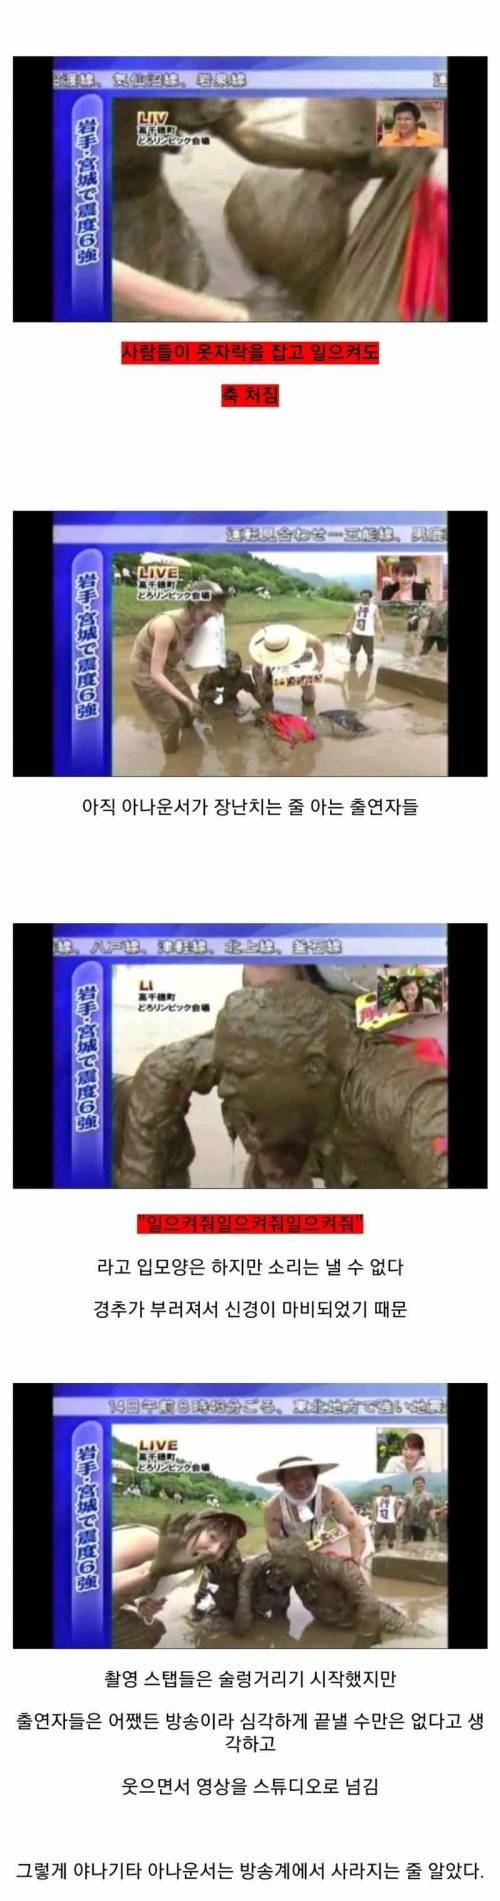 [스압] 일본에서 일어난 방송사고.jpg